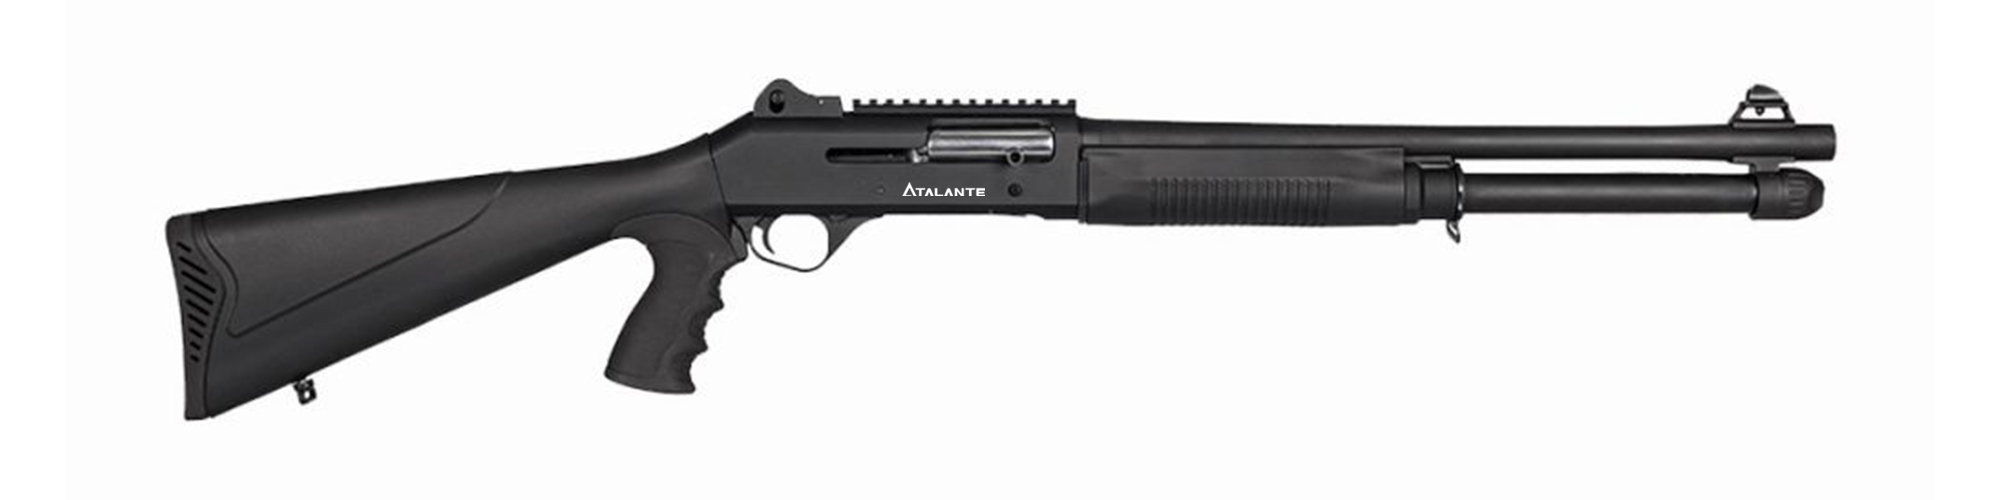 Atalante Arms M4